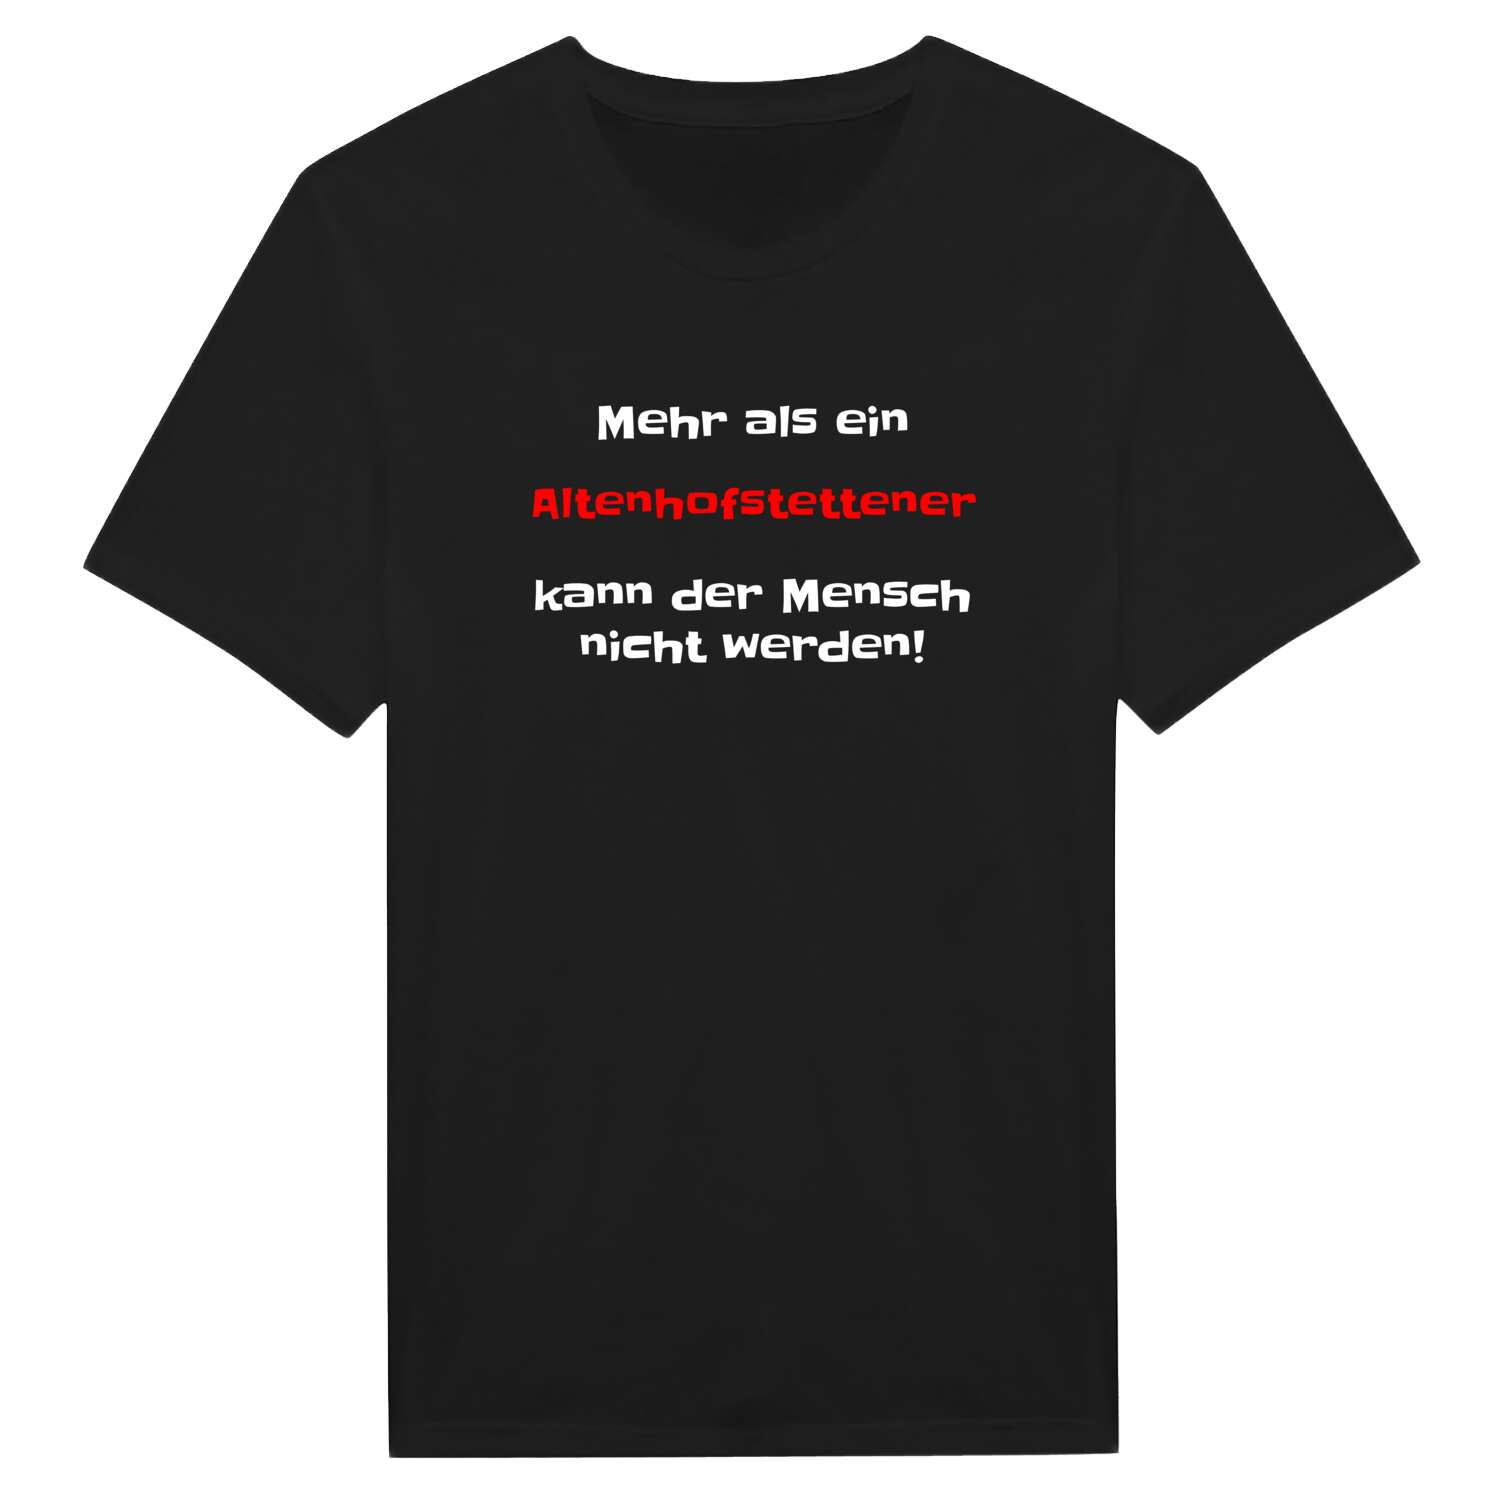 Altenhofstetten T-Shirt »Mehr als ein«